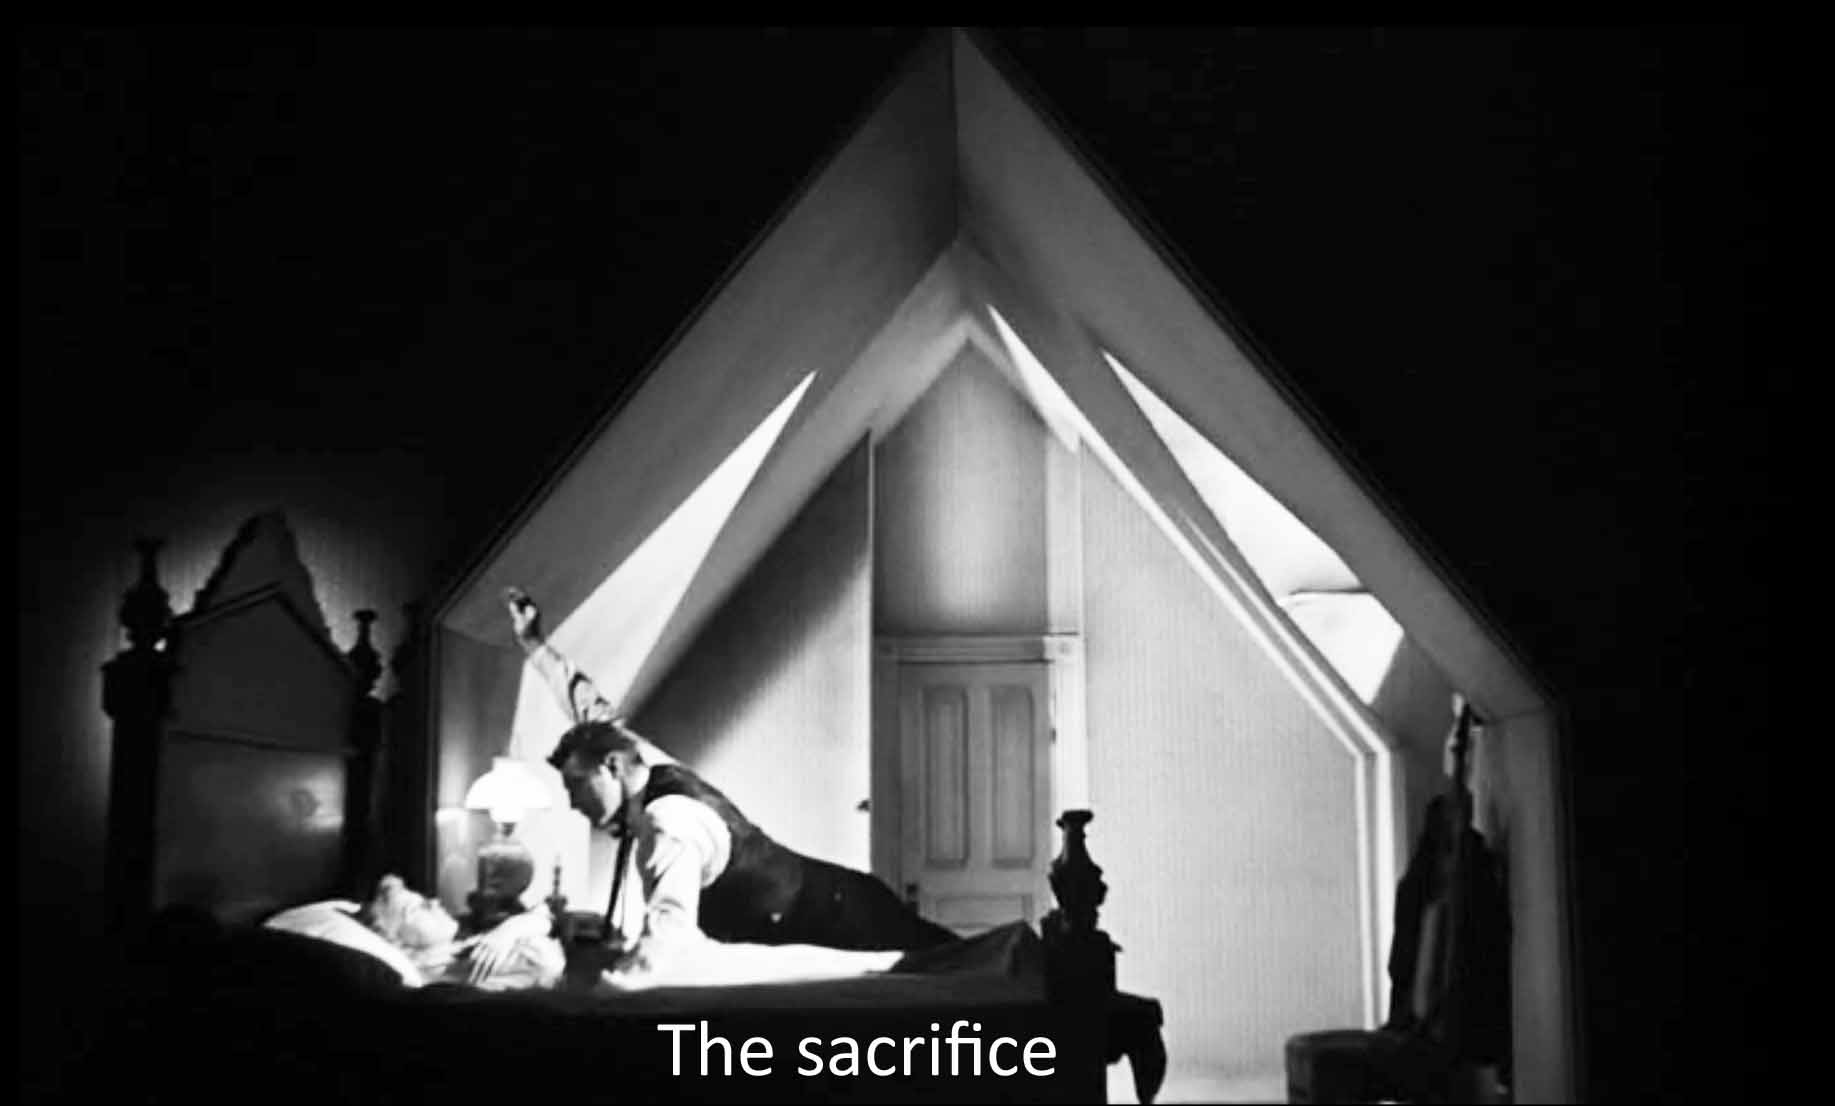 The sacrifice